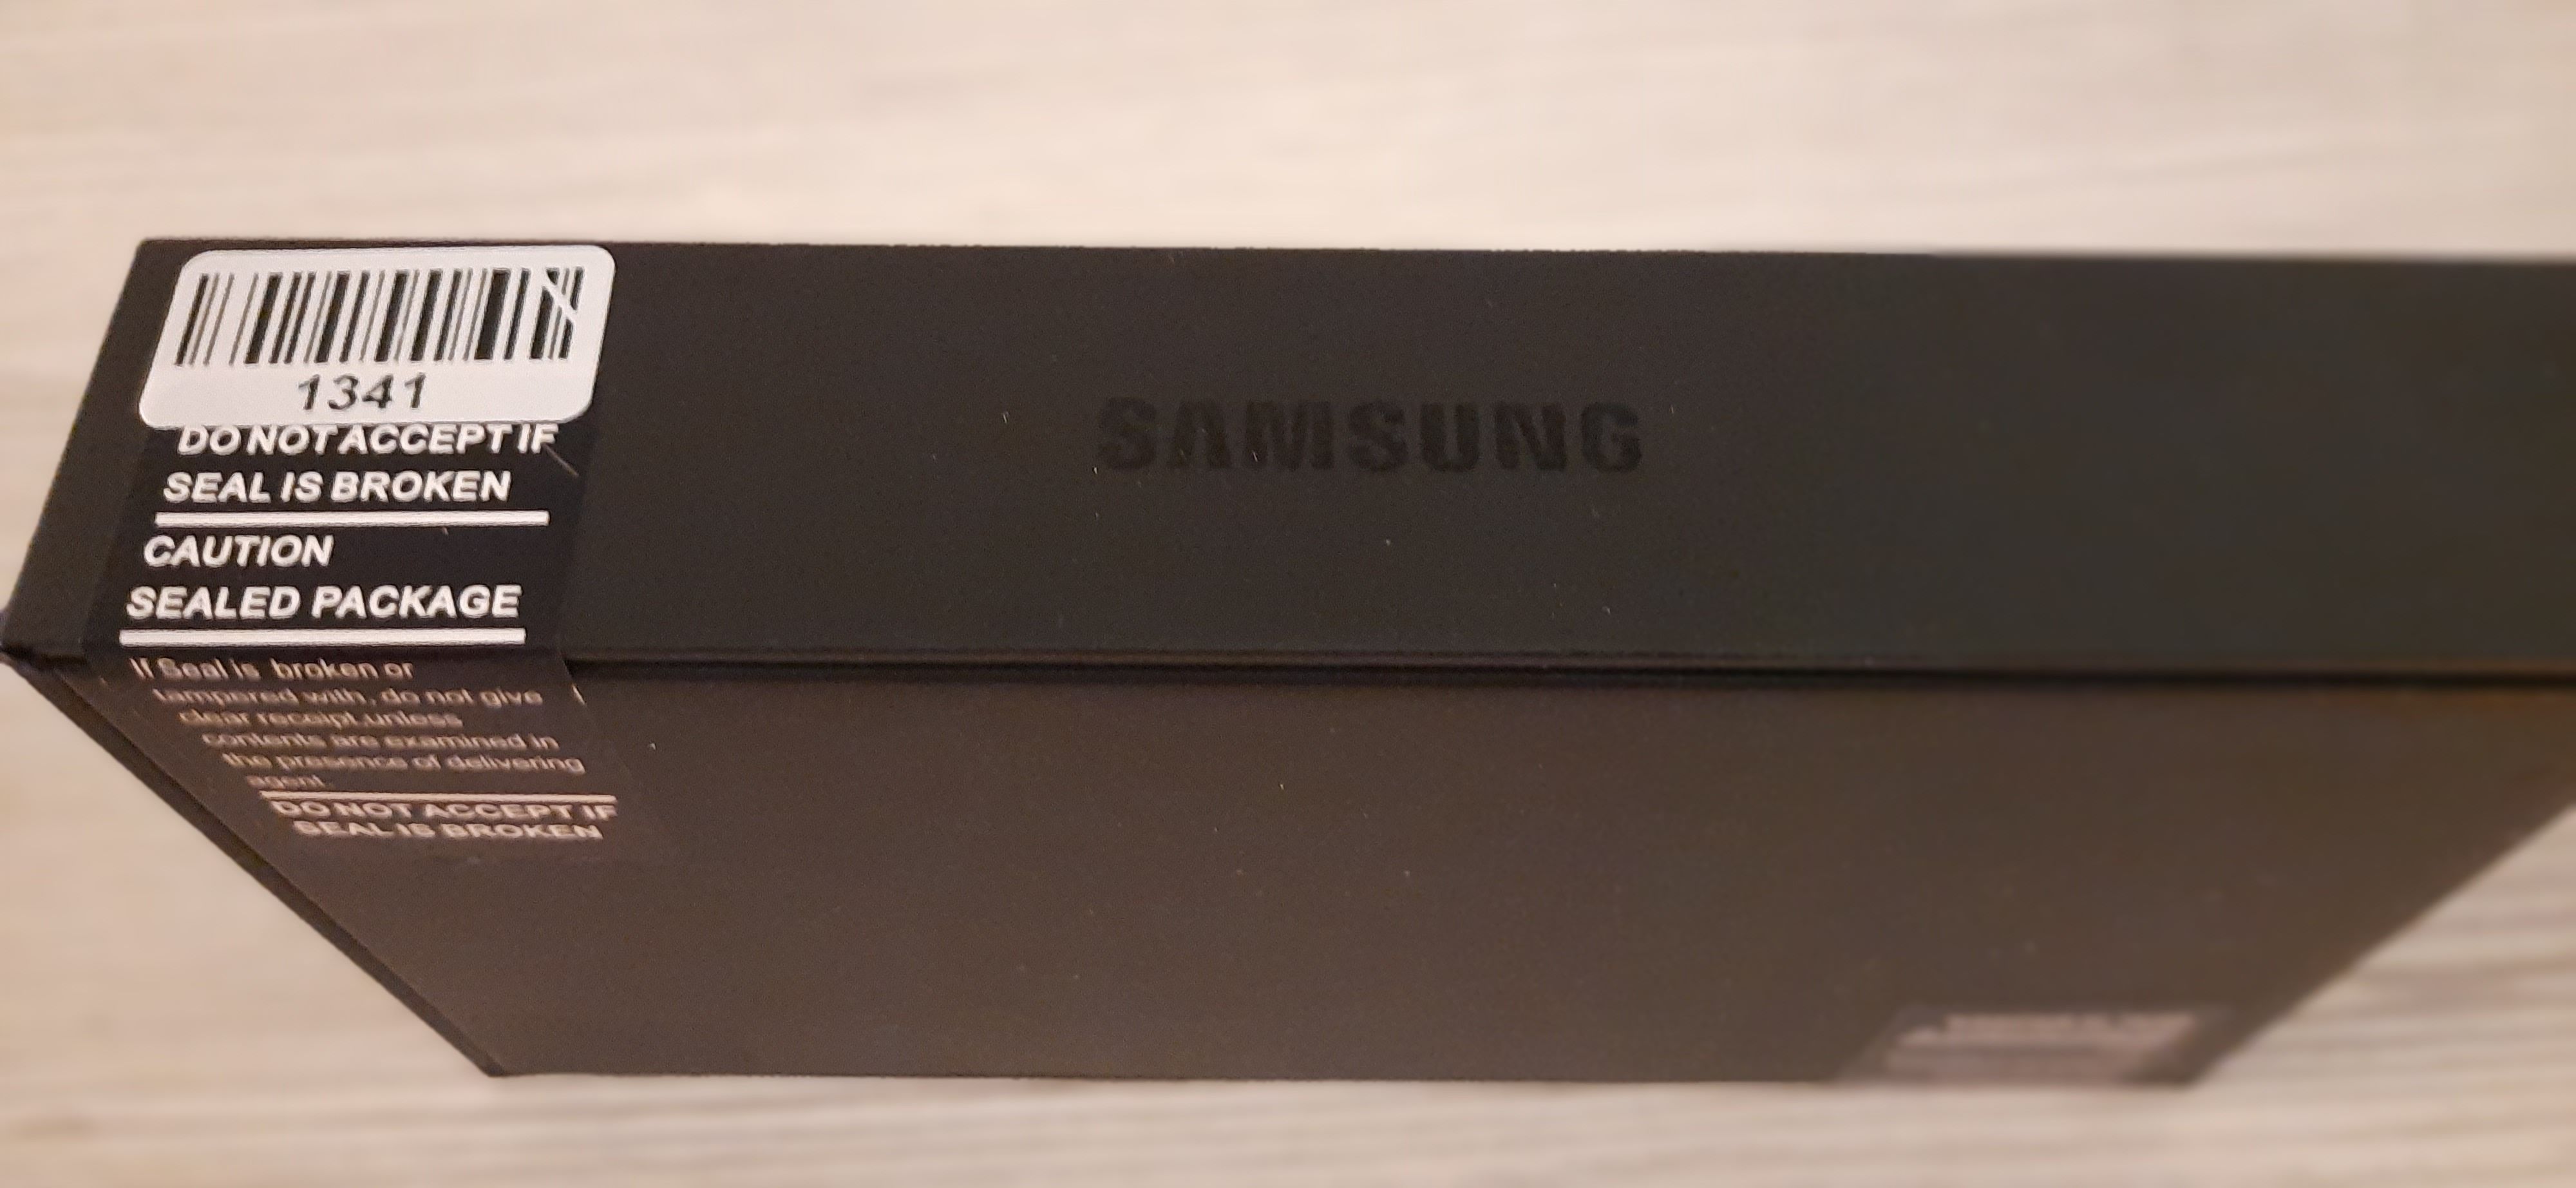 Ist es wirklich ein original verpacktes Galaxy S21+ 5G Handy oder doch  nachträglich versiegelt? – Seite 3 - Samsung Community